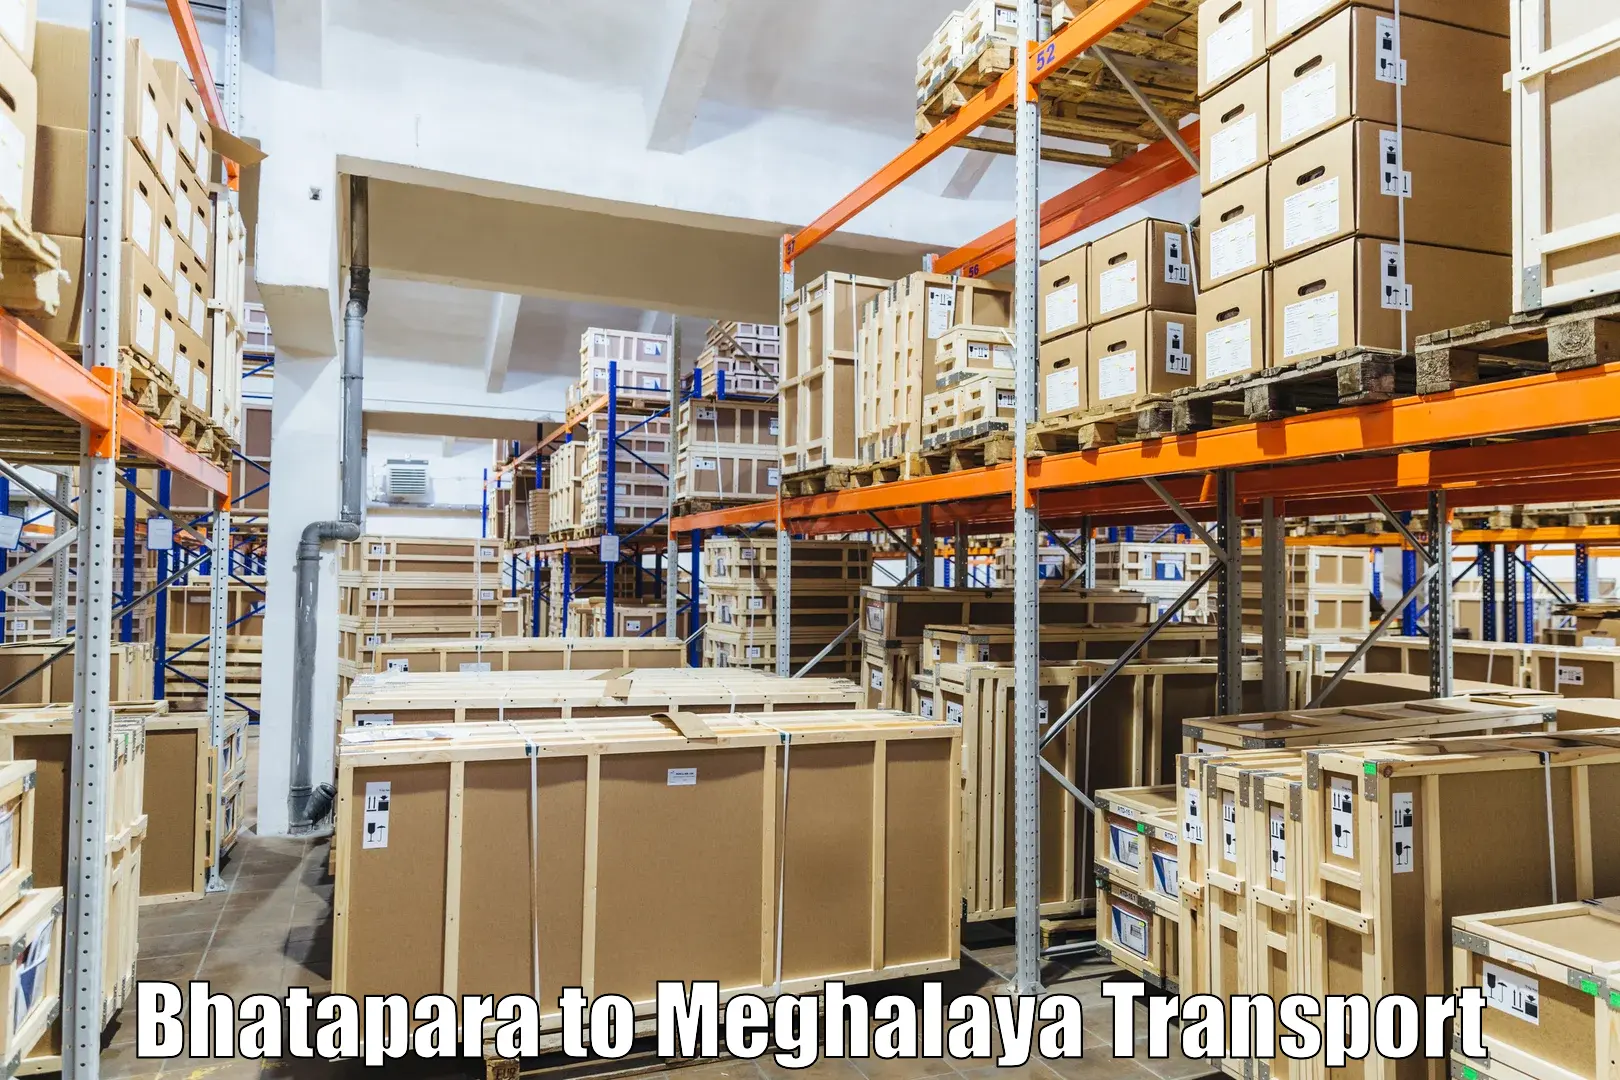 Online transport service in Bhatapara to NIT Meghalaya